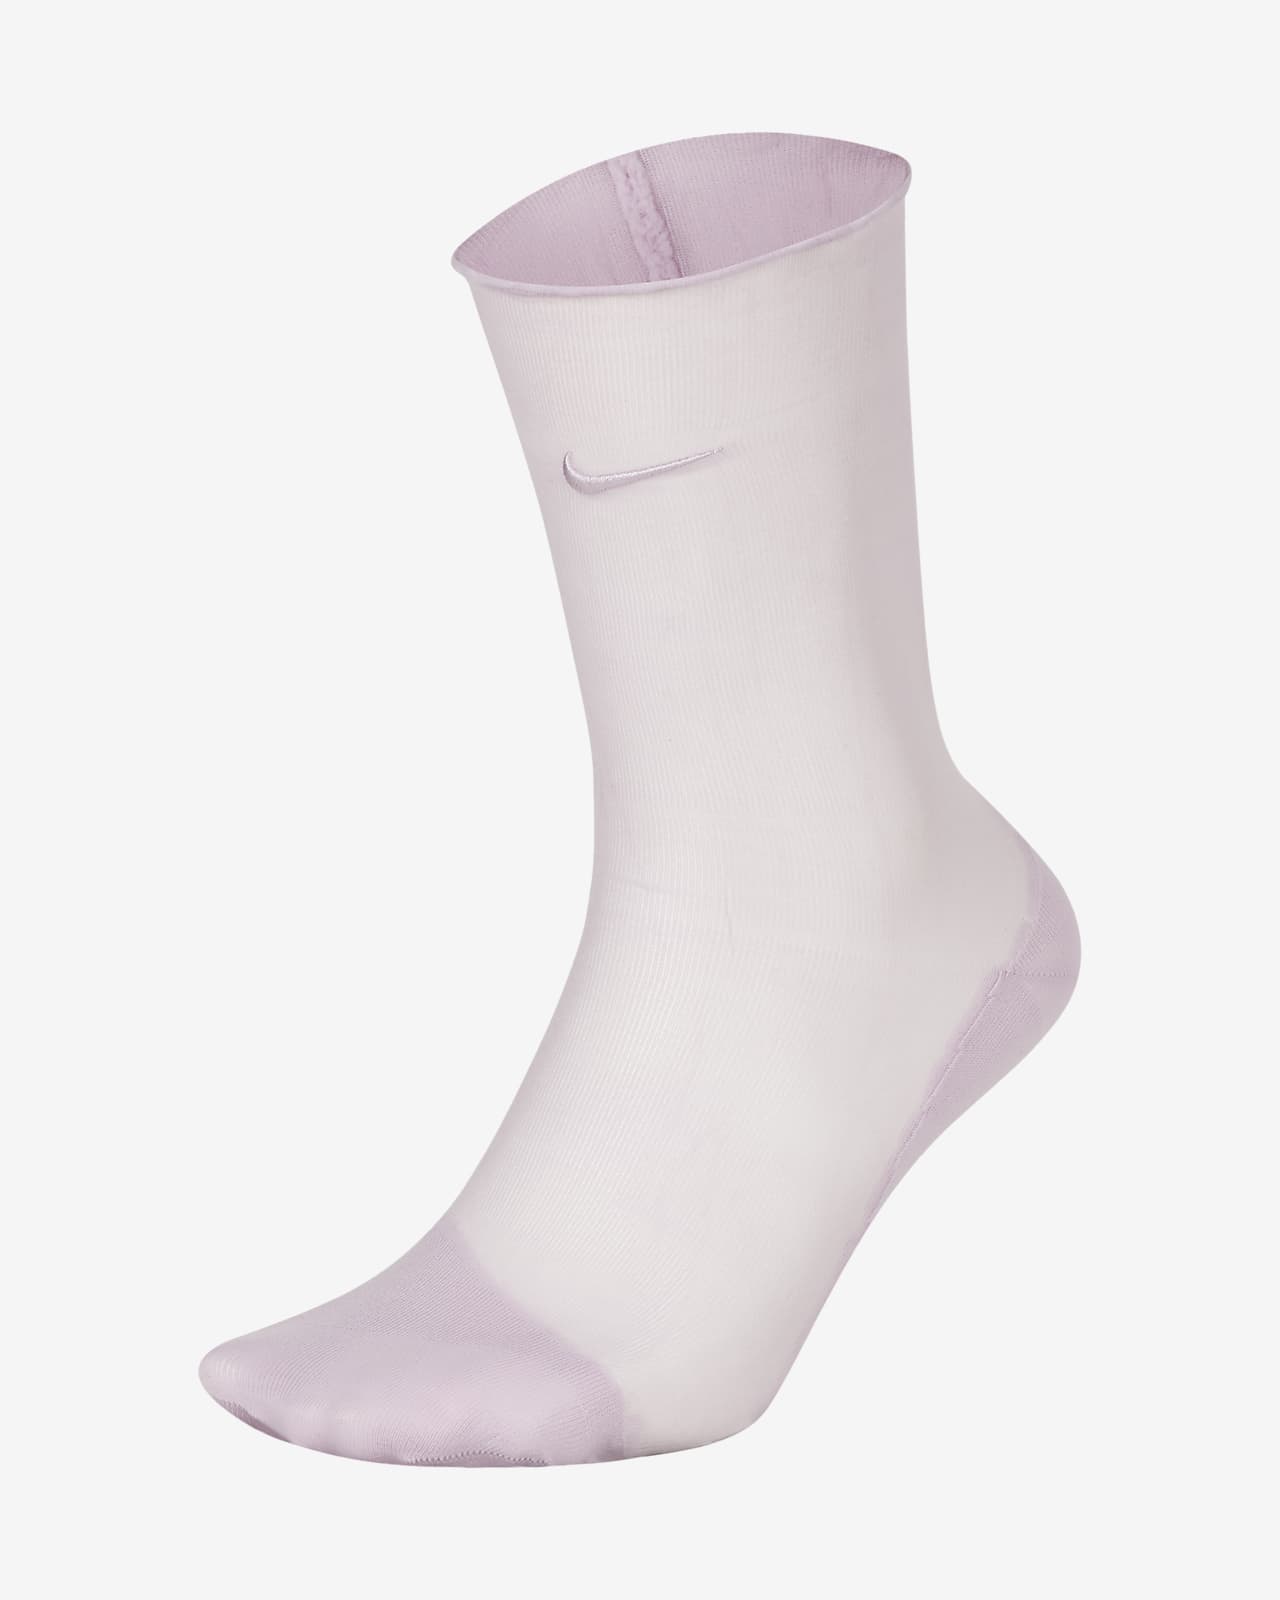 women's ankle socks nike